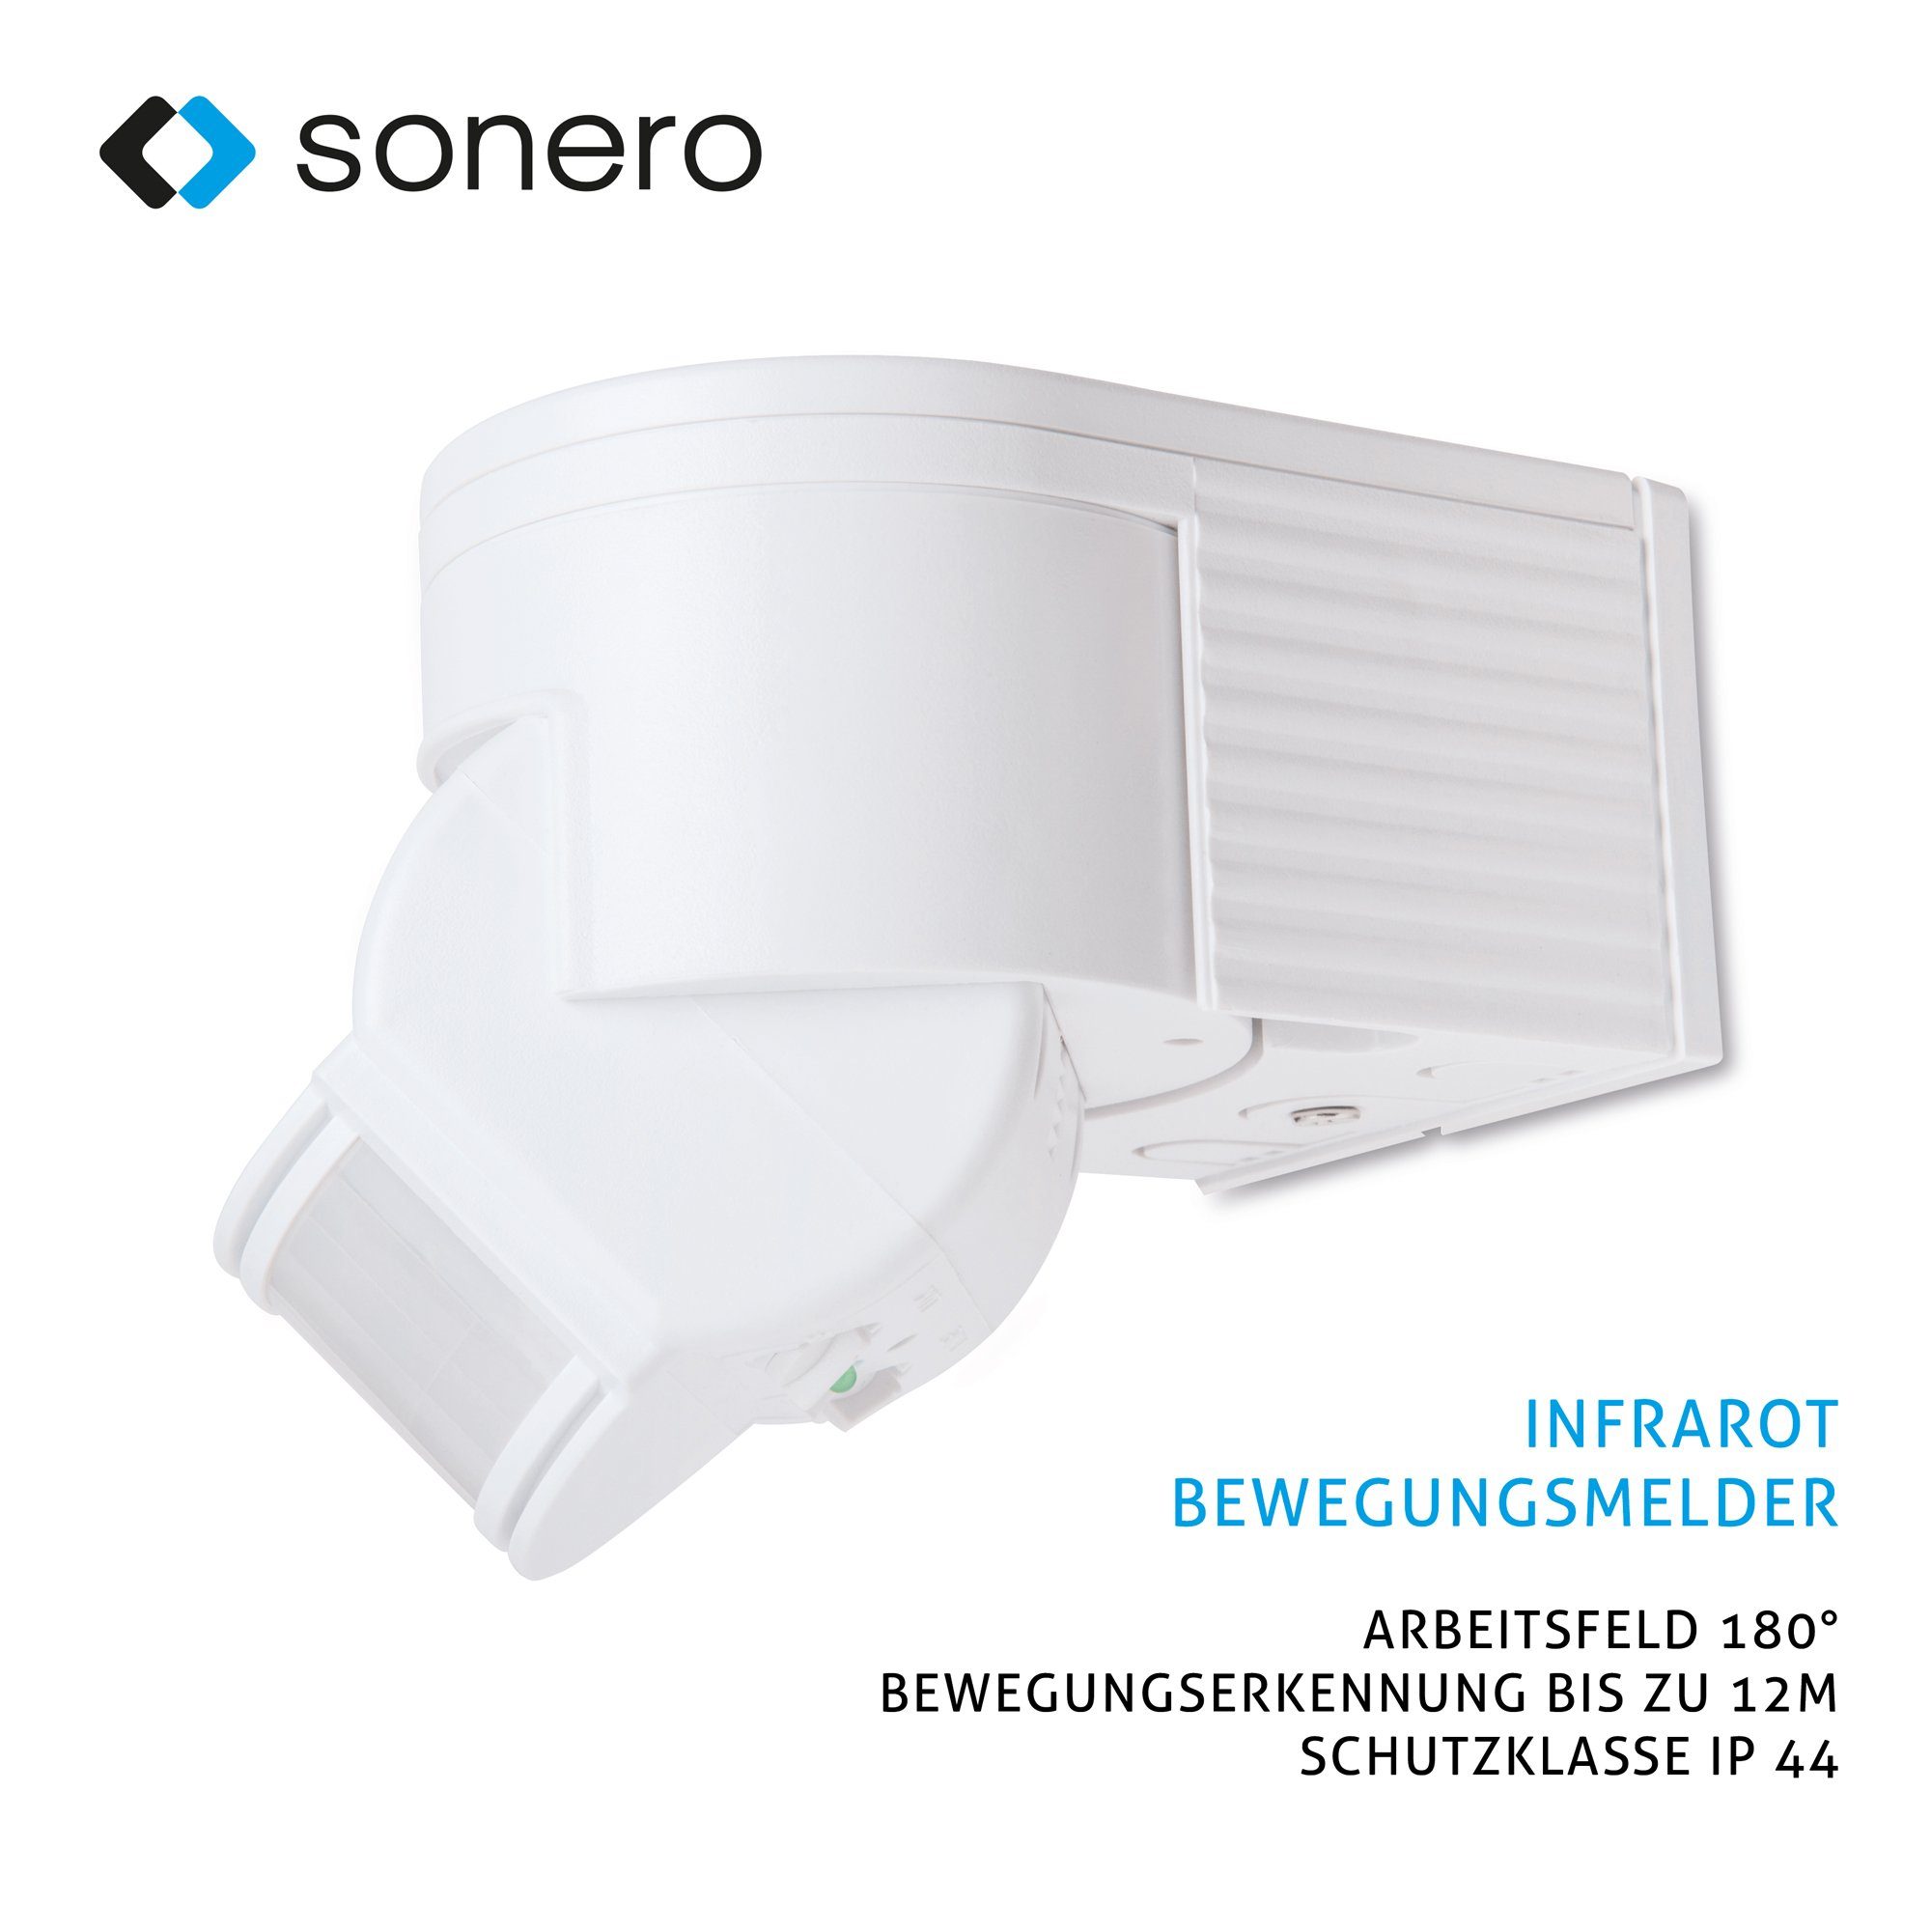 weiß - Außenmontage, Innen- / X-IM030 Bewegungsmelder Sonero sonero Infrarot-Bewegungsmelder